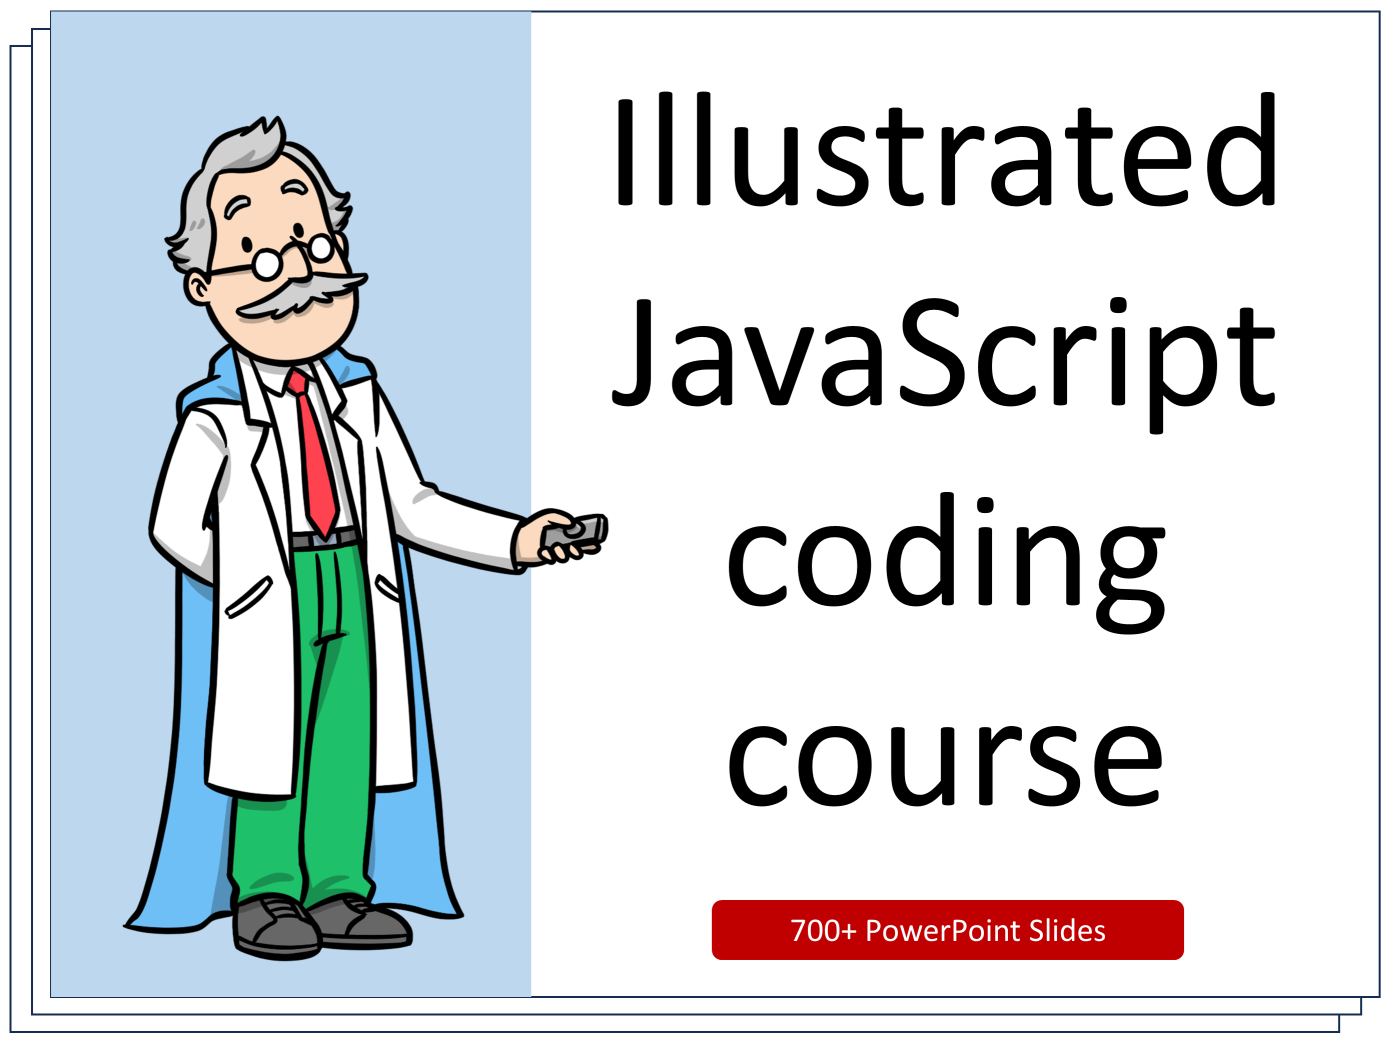 Illustrated JavaScript course